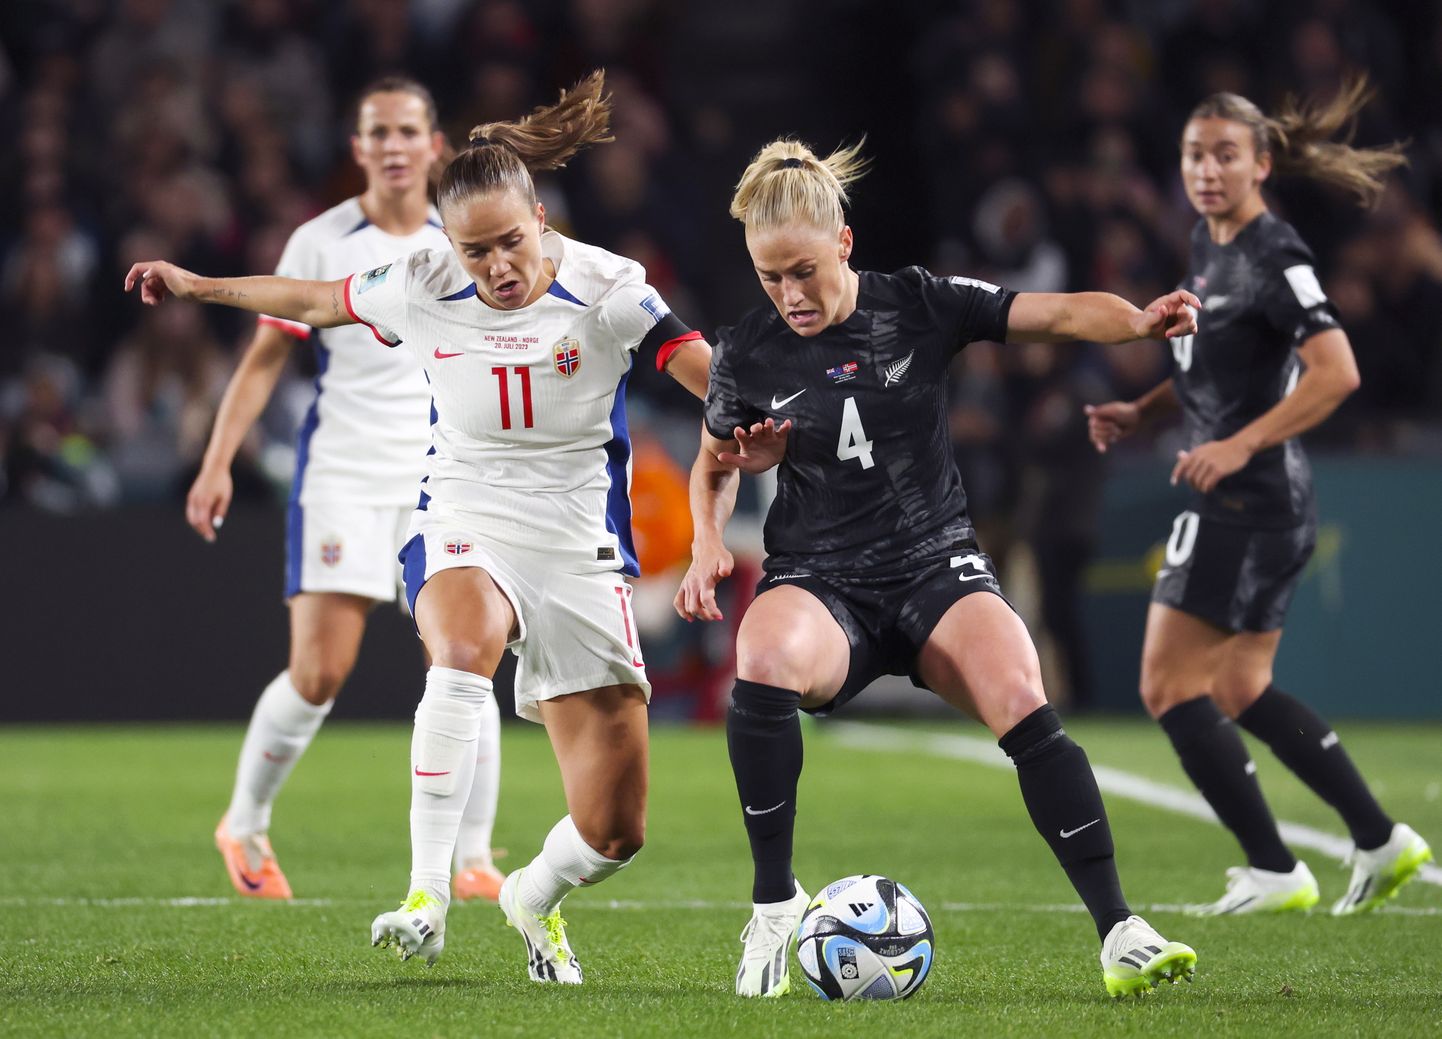 Austraalias ja Uus-Meremaal toimuvad 20. juulist kuni 20. augustini naiste jalgpalli maailmameistrivõistlused. Esimene kohtumine on Uus-Meremaa ja Norra koondise vahel Uus-Meremaal Aucklandis